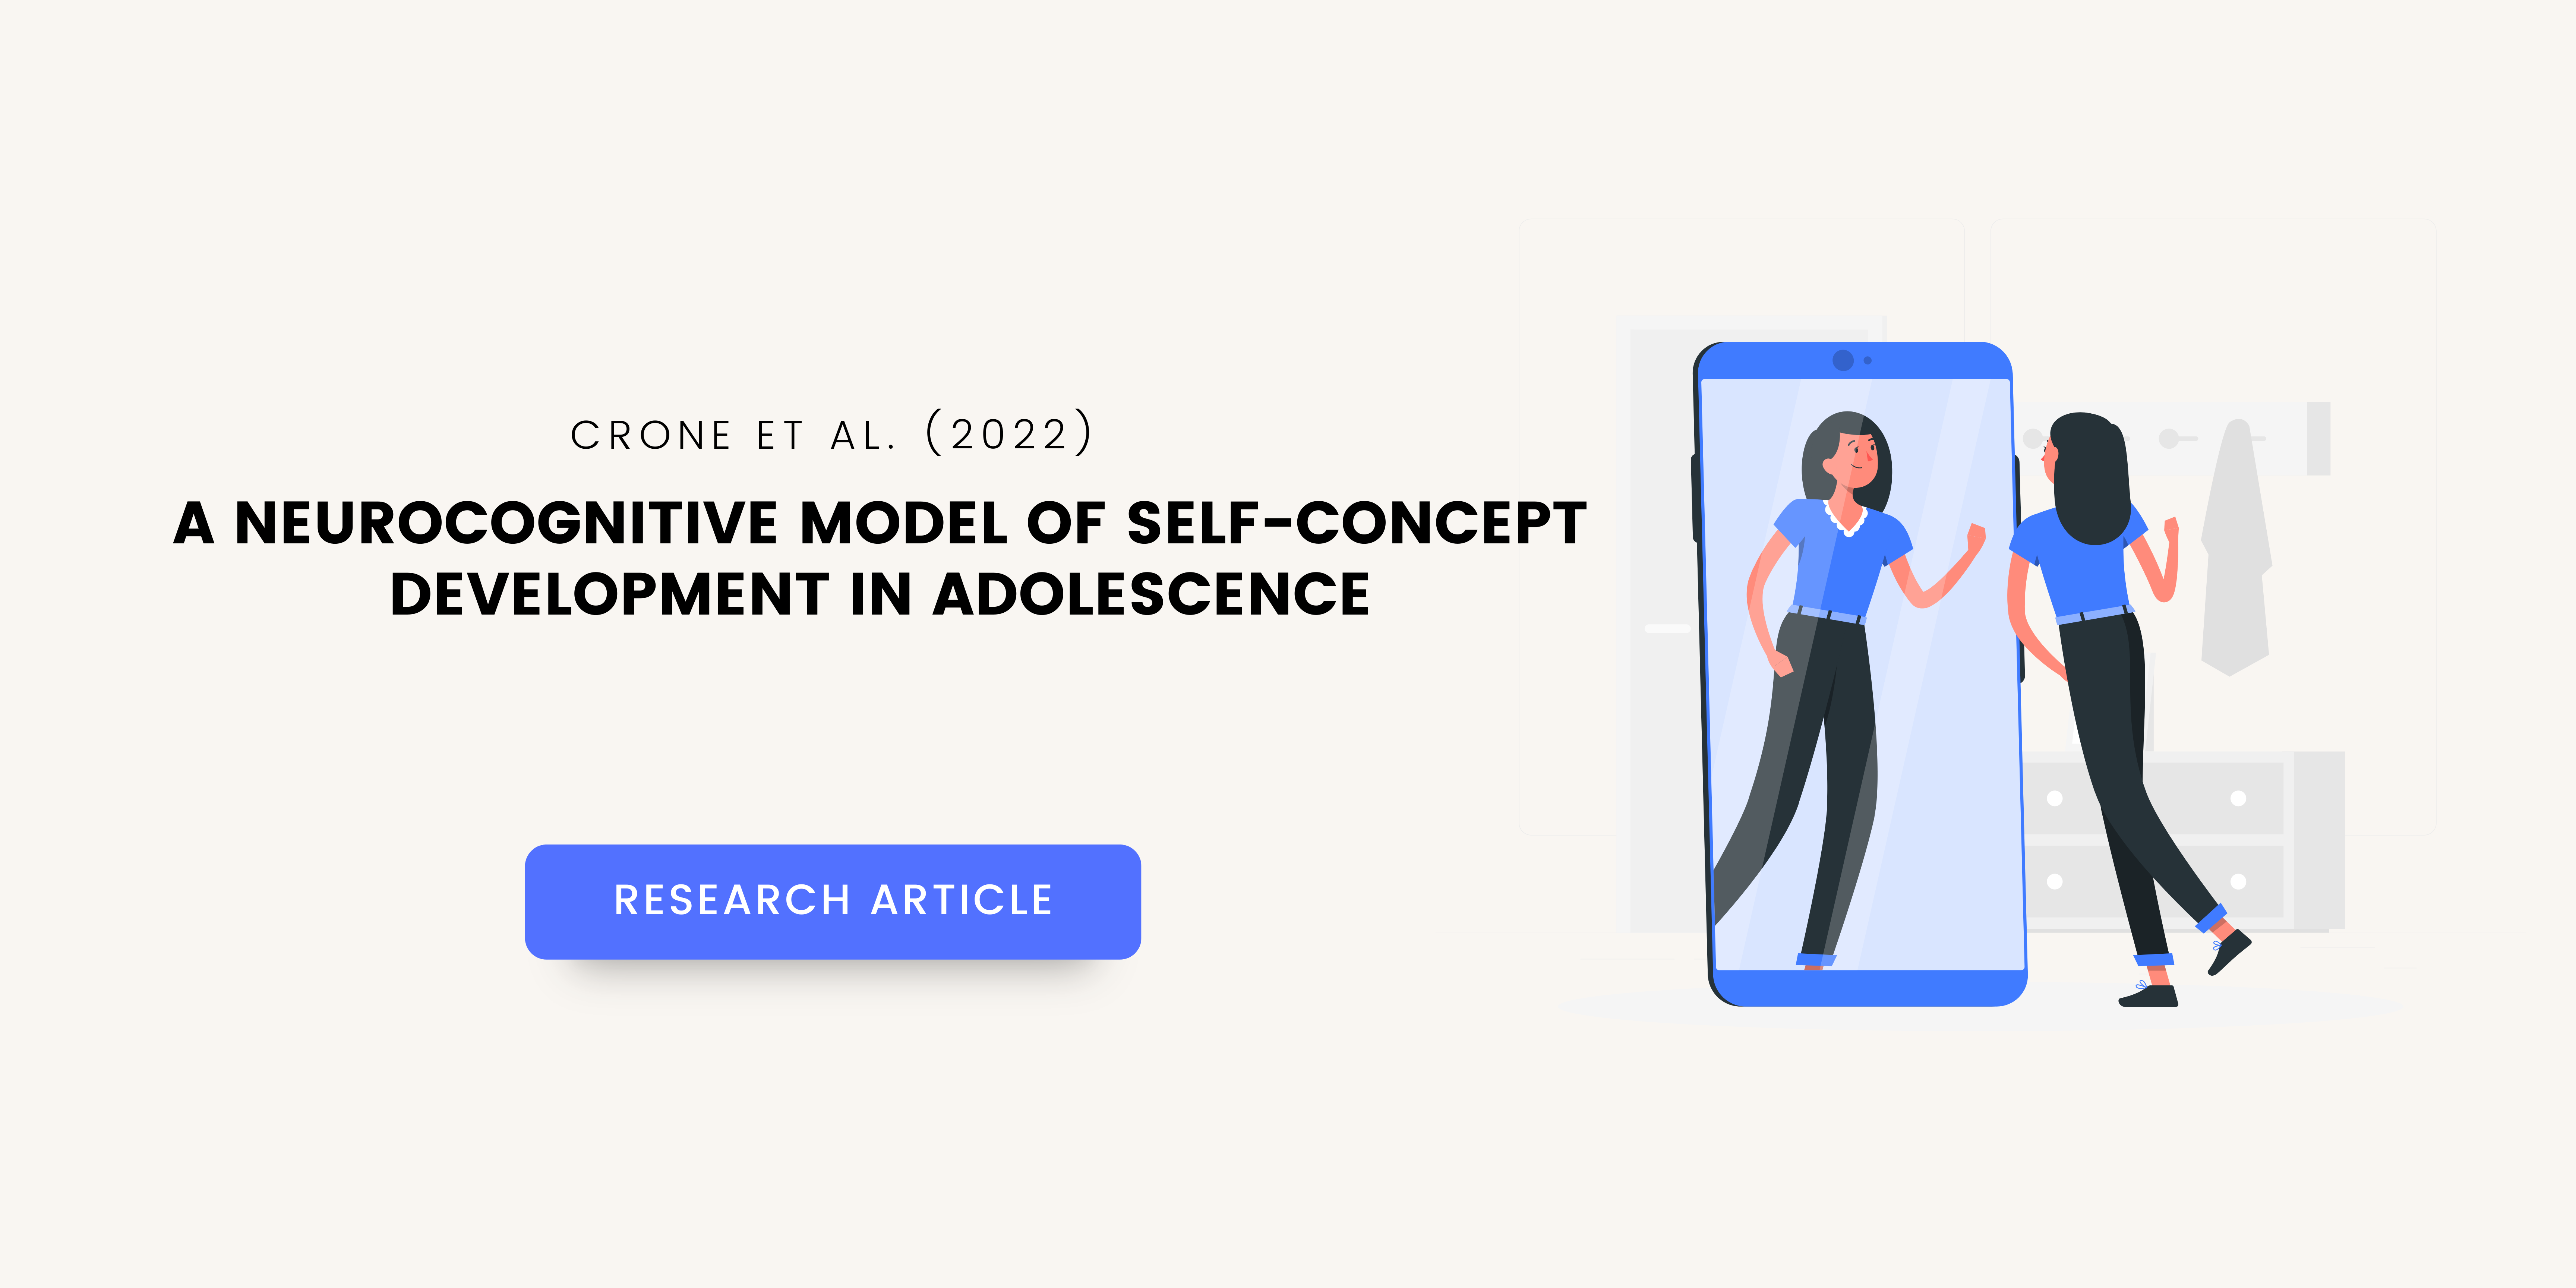 A Neurocognitive Model of Self-Concept Development in Adolescence